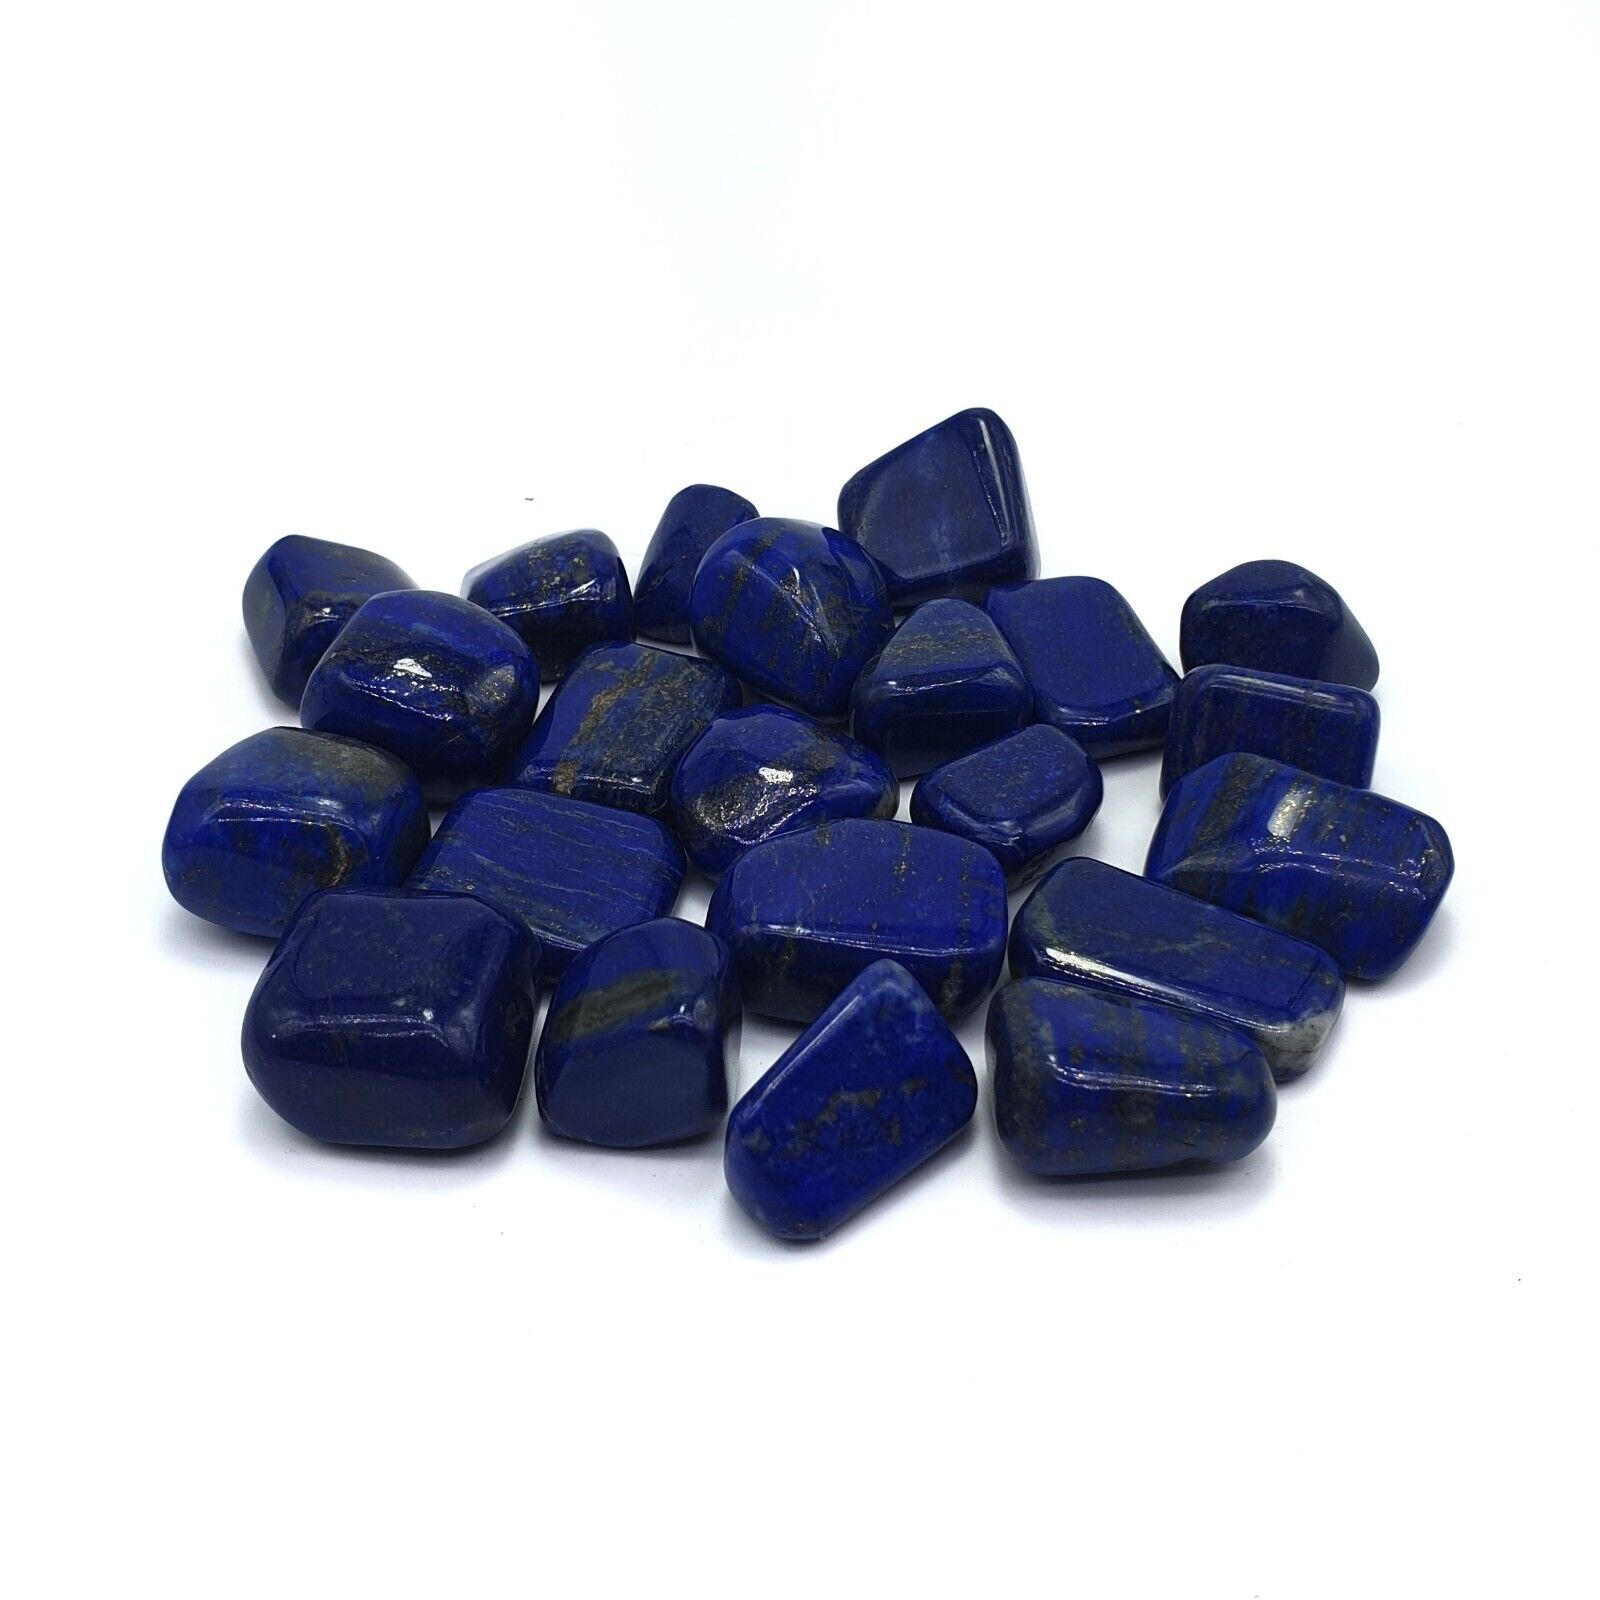 25 pcs Amazing Quality Lapis Lazuli Tumbles,Lapis Tumbles,Lapis Stone